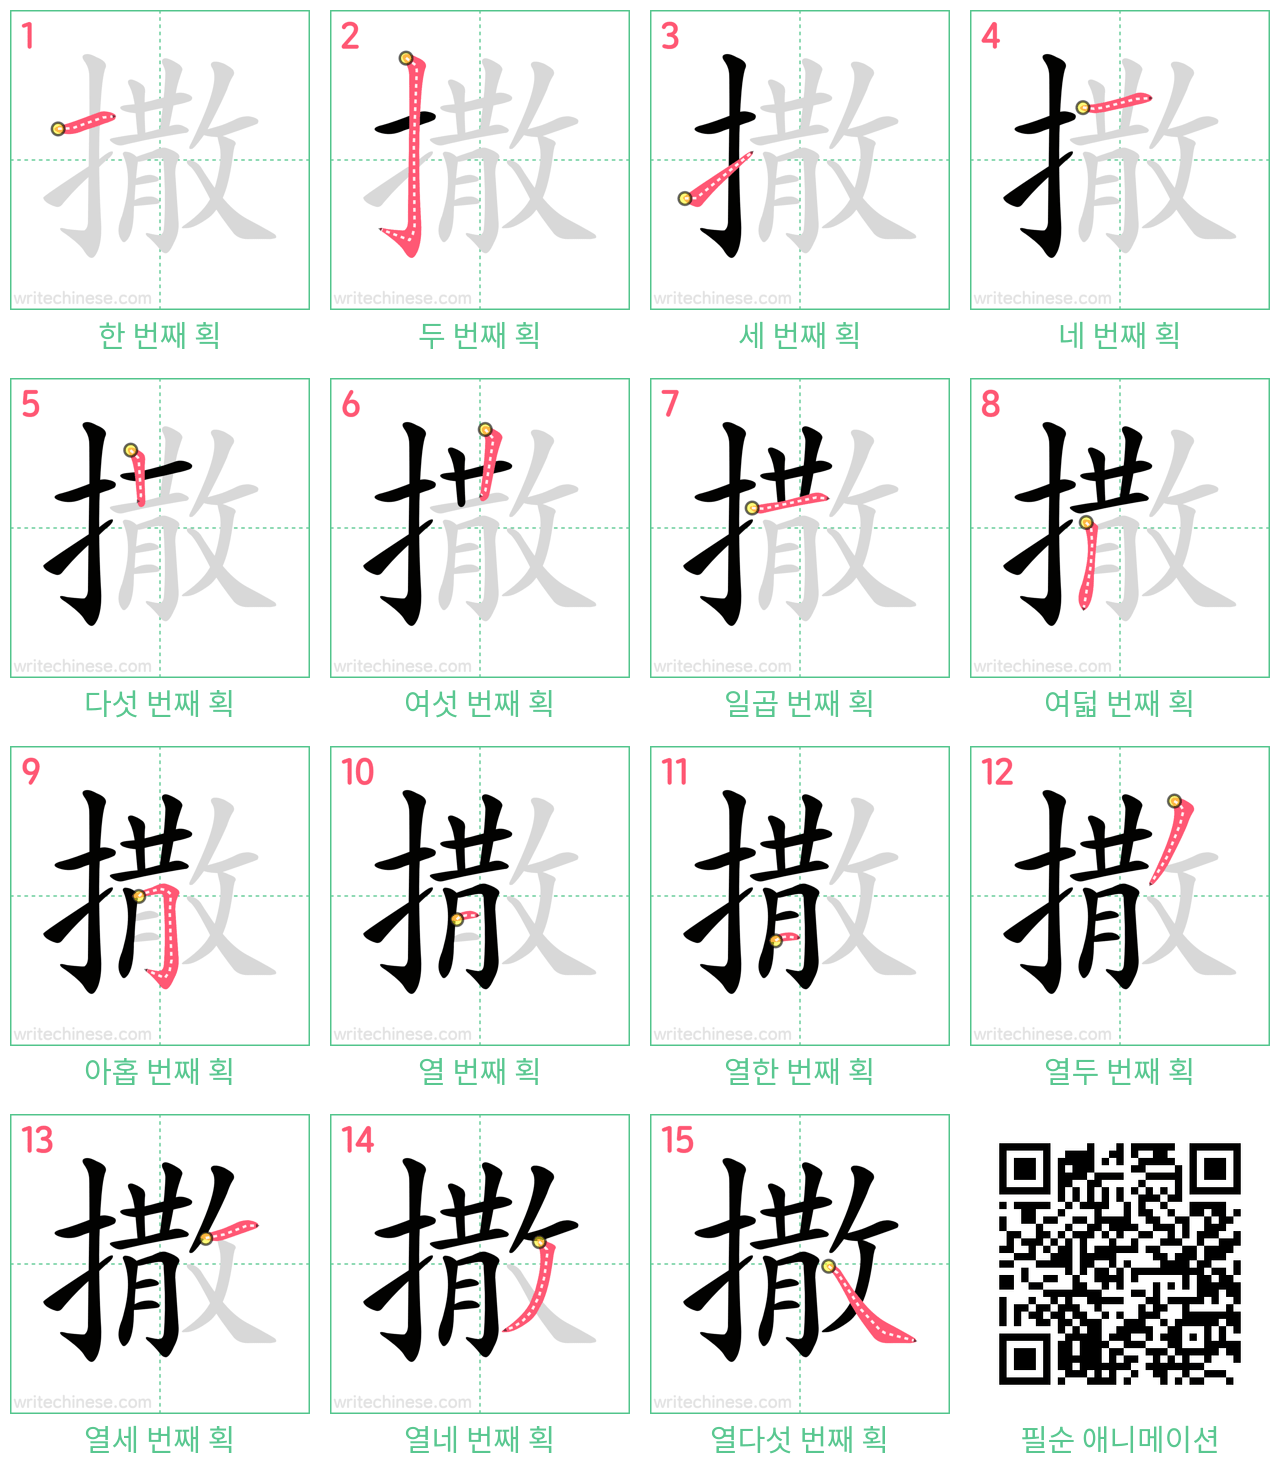 撒 step-by-step stroke order diagrams